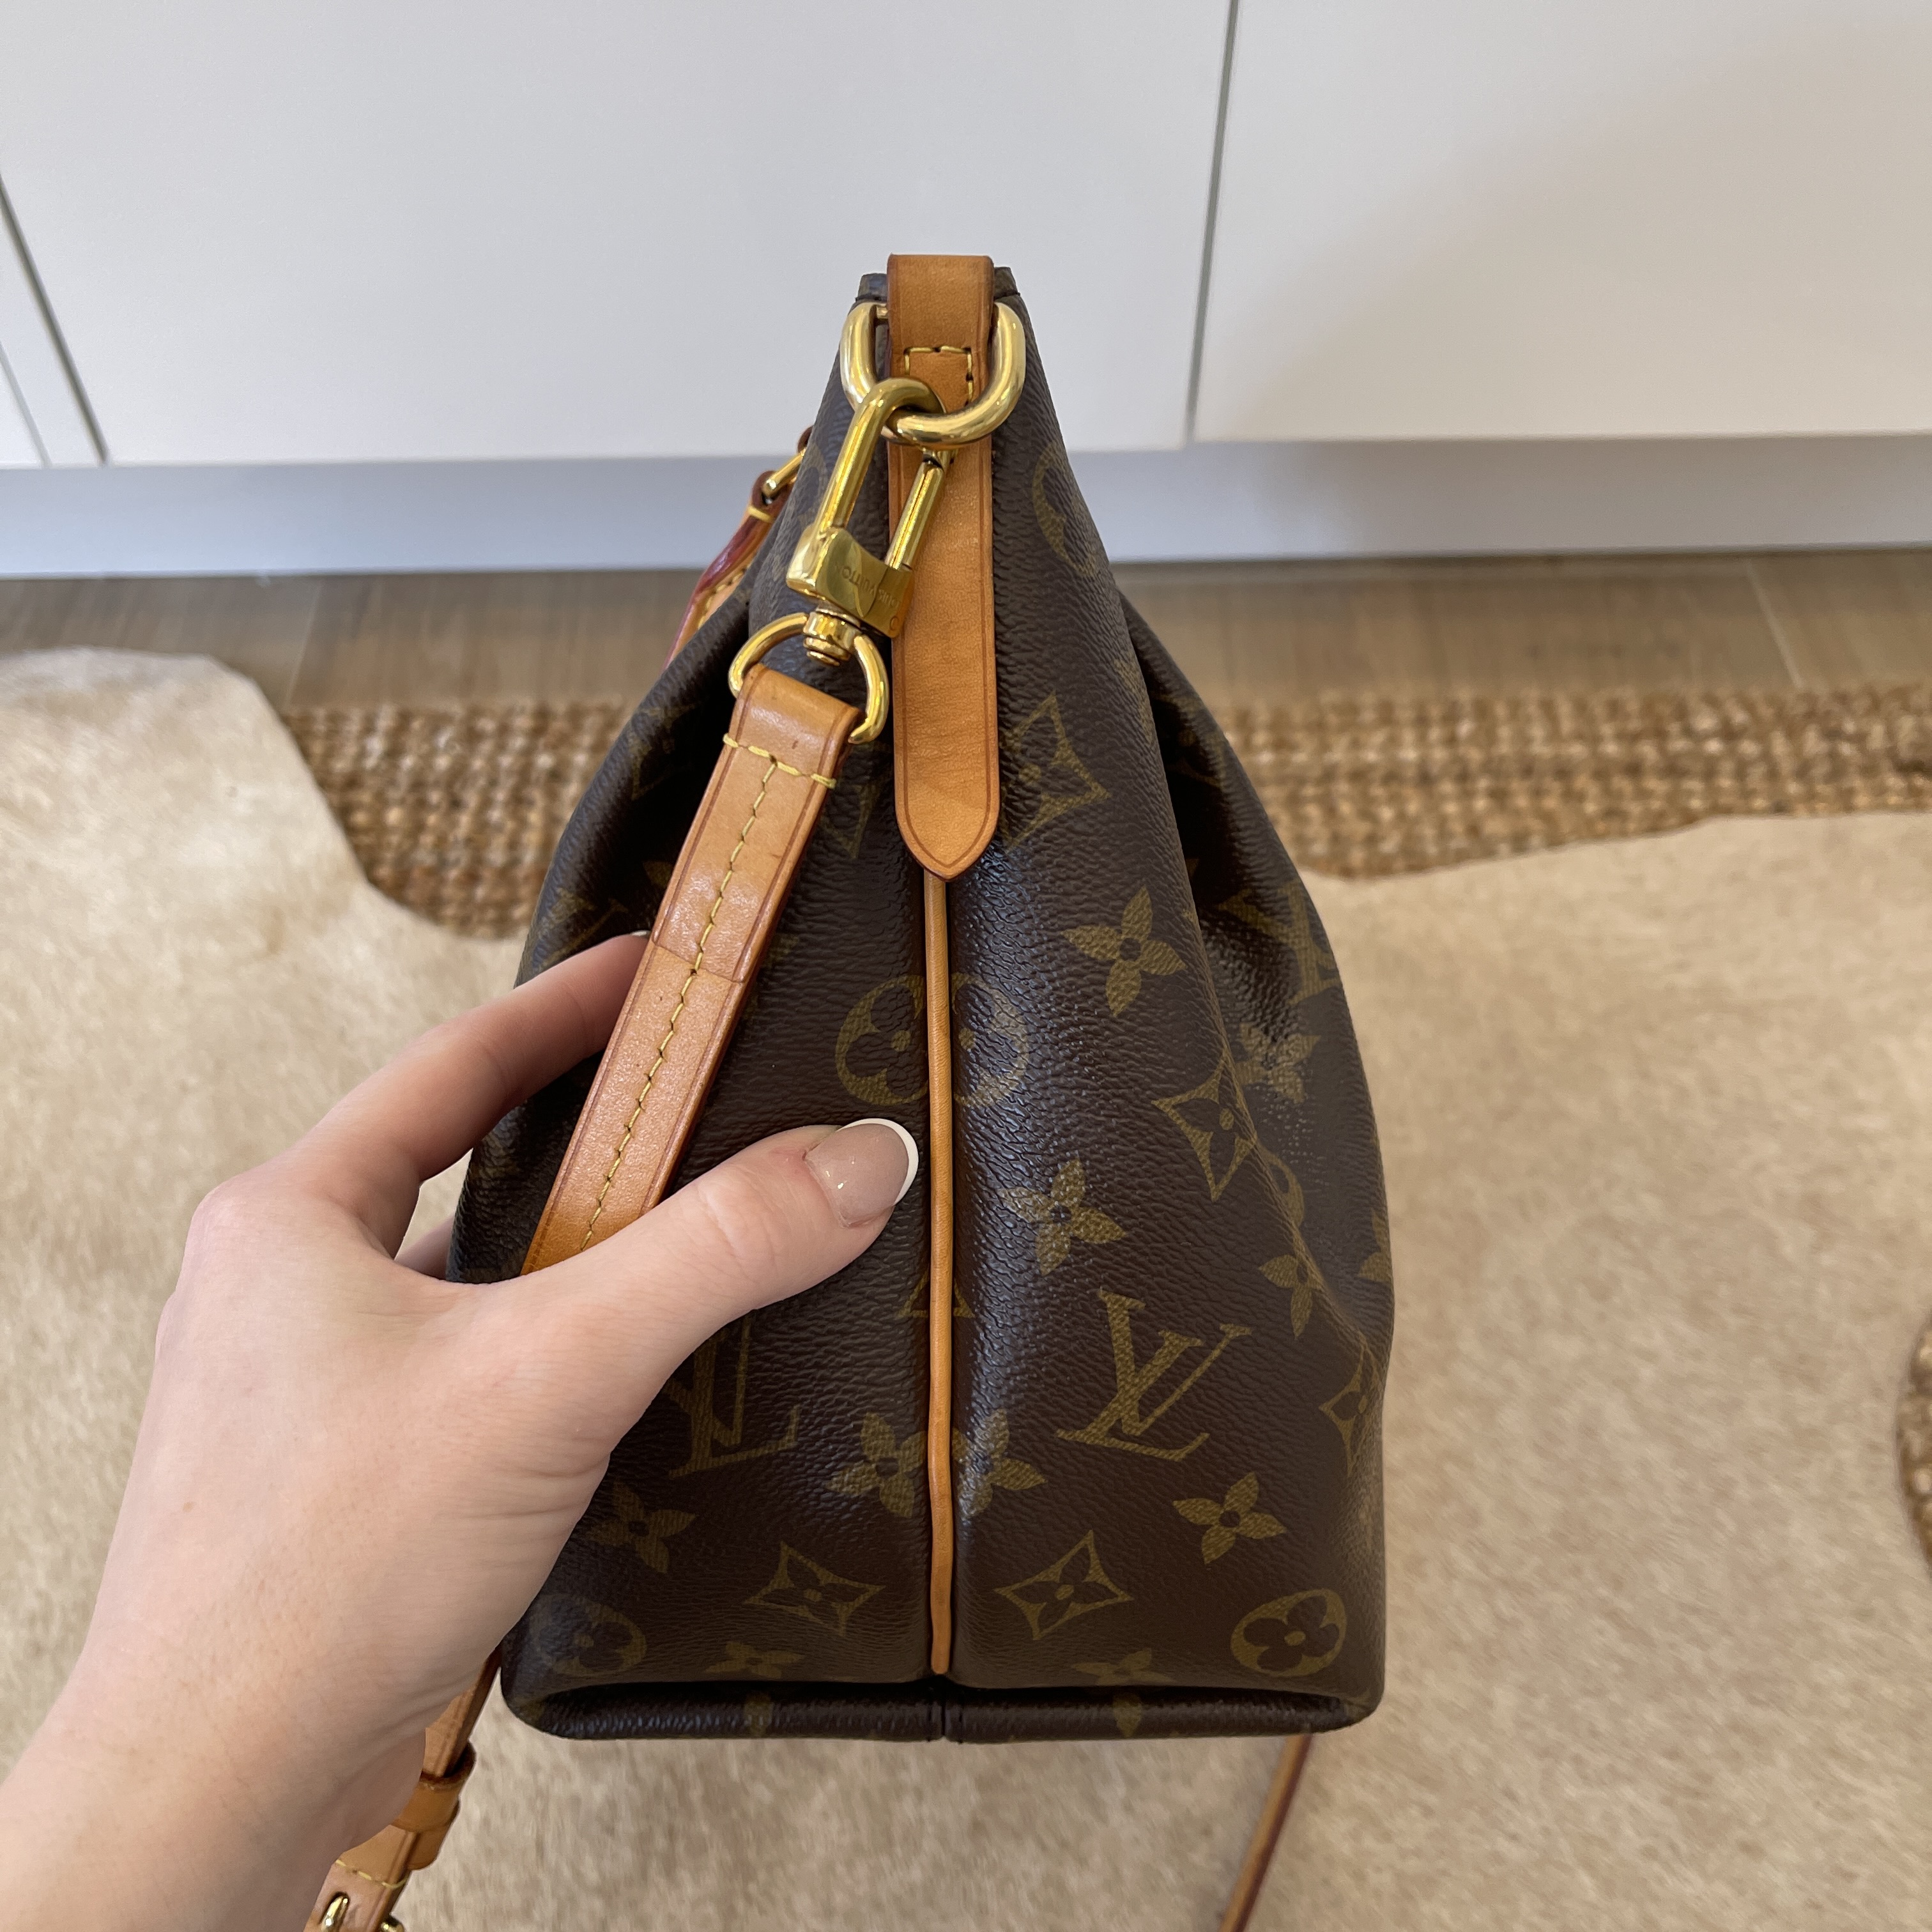 Louis Vuitton Turenne MM Shoulder Bag in Monogram-TheShadesHut